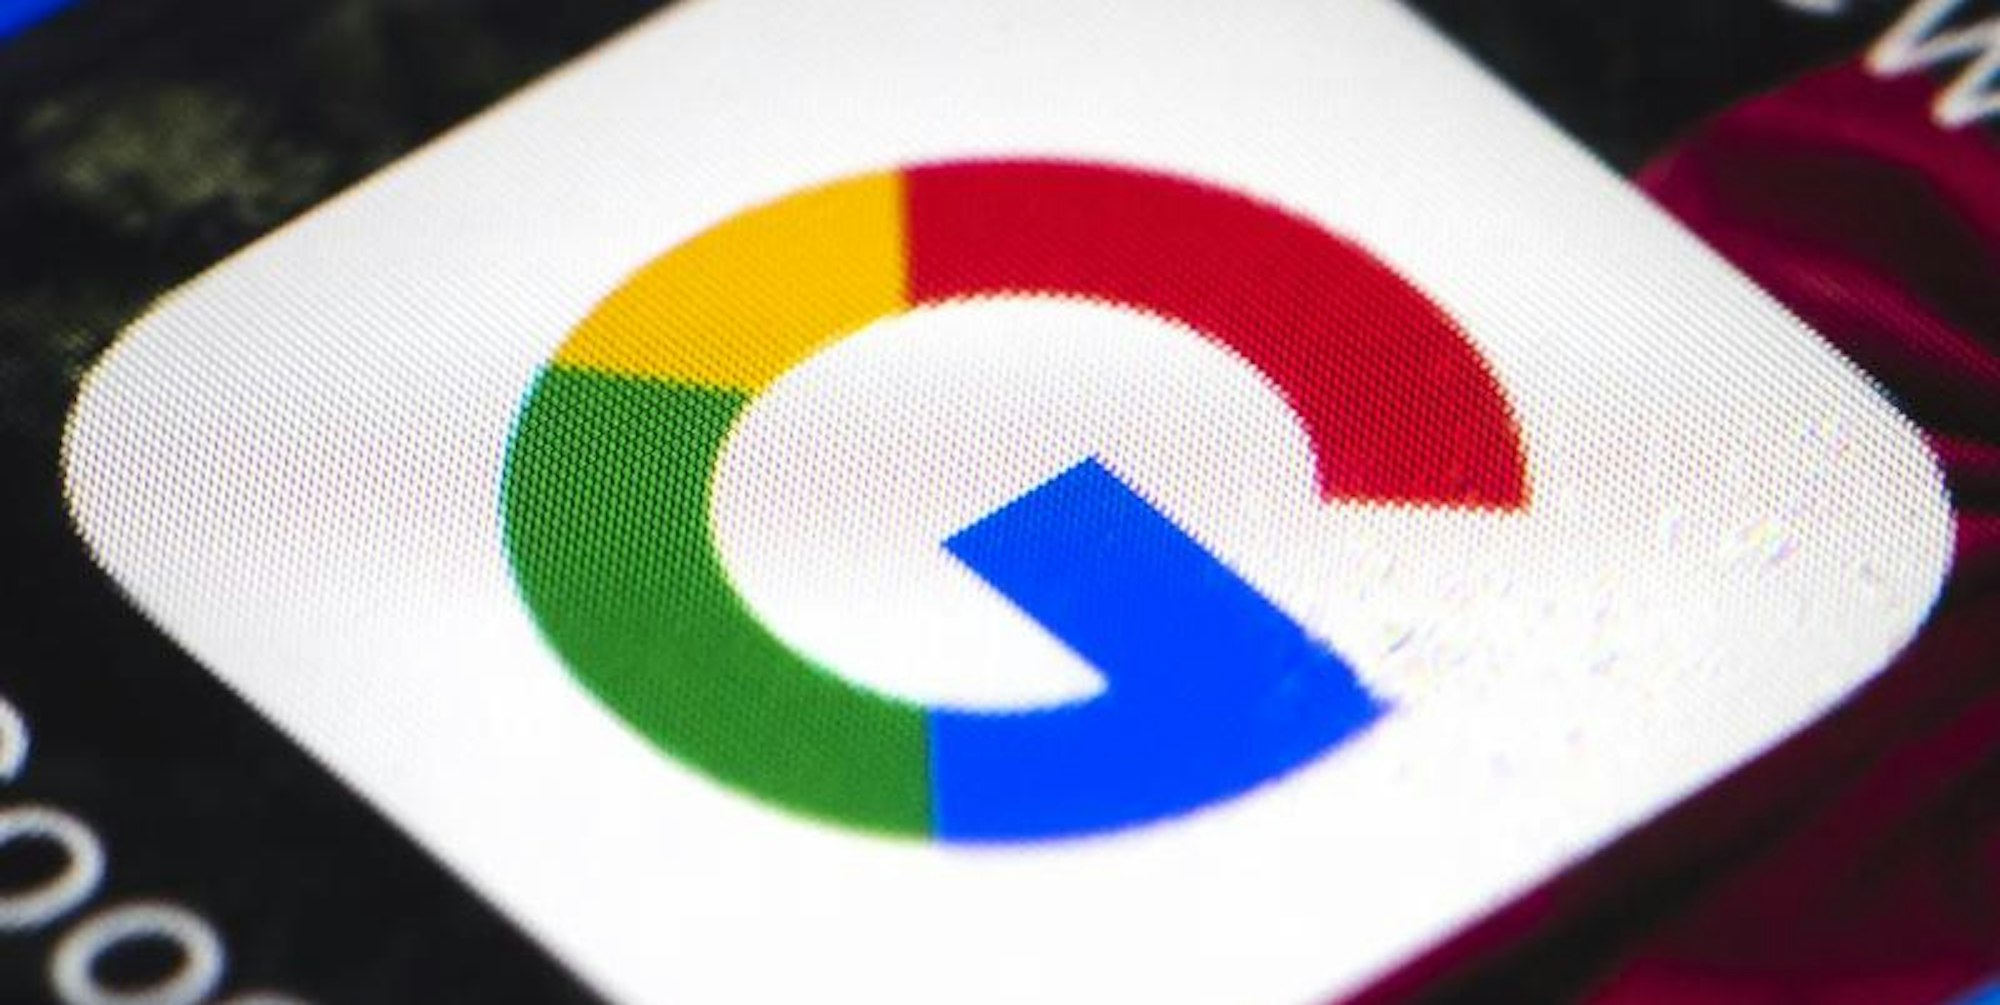 Das Google-Logo auf einem Smartphone. (Symbolbild)